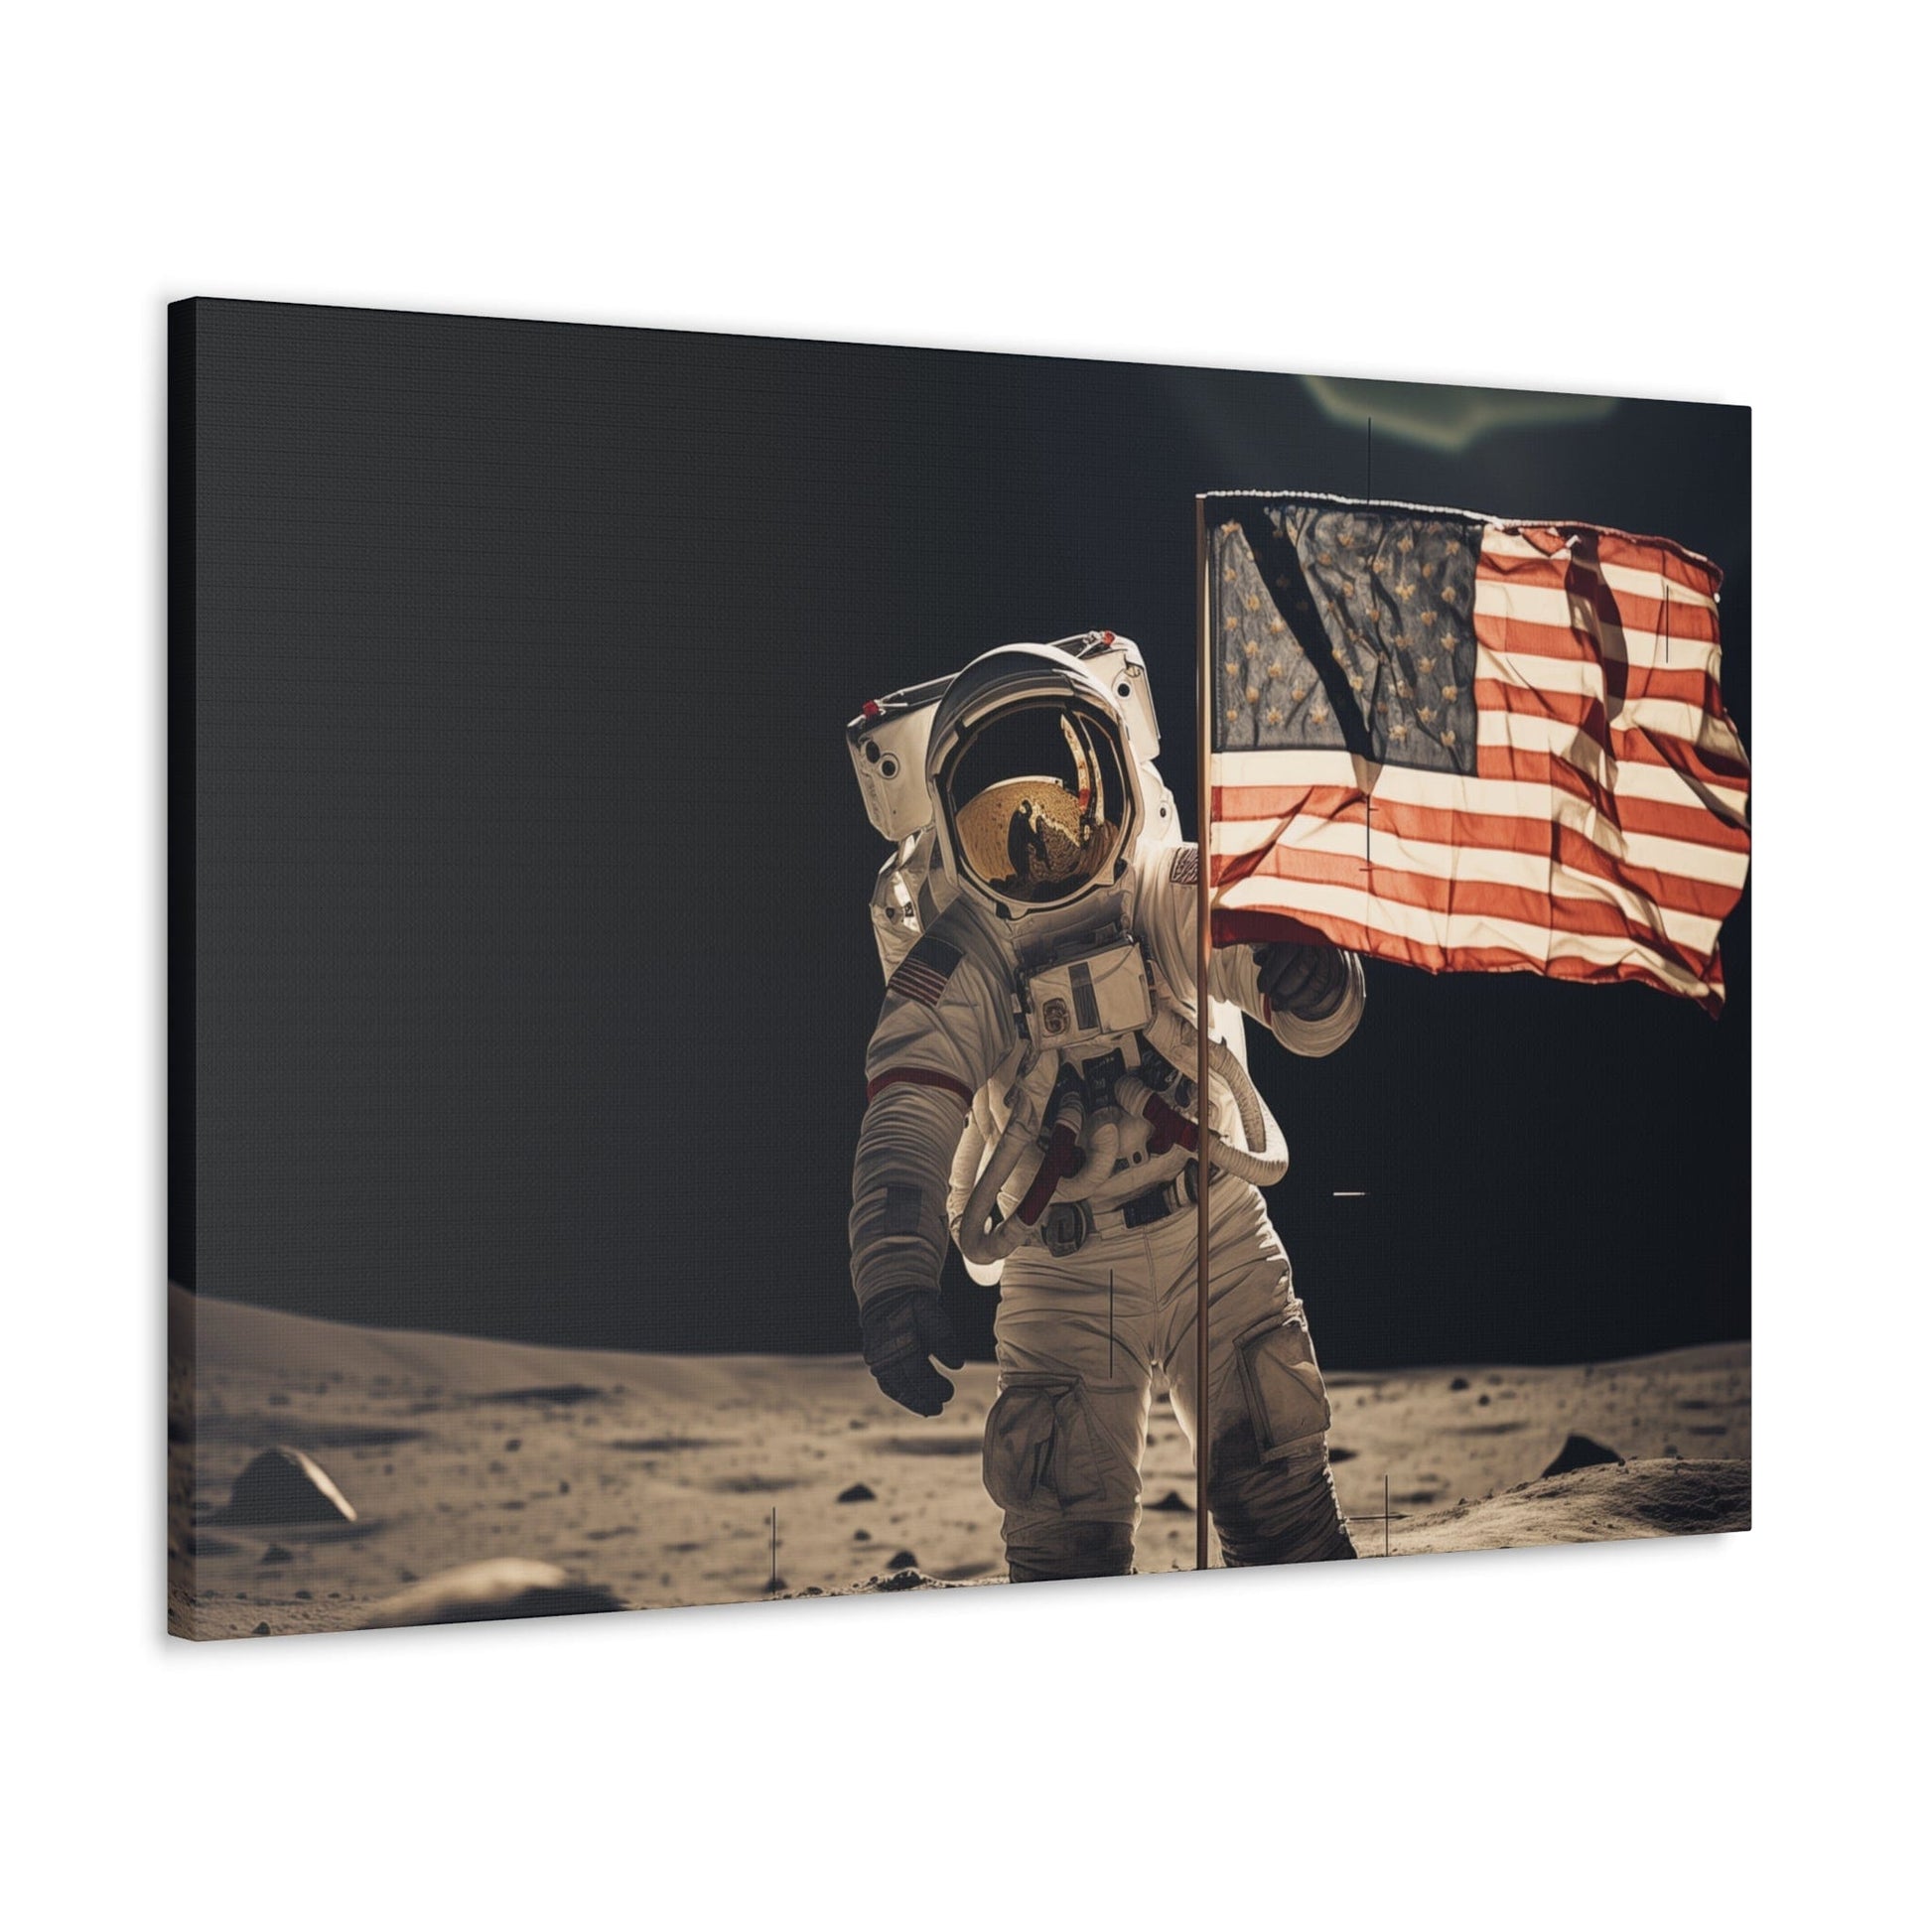 Canvas 36" x 24" / 1.25" Astronaut Moon Flag Planting Canvas